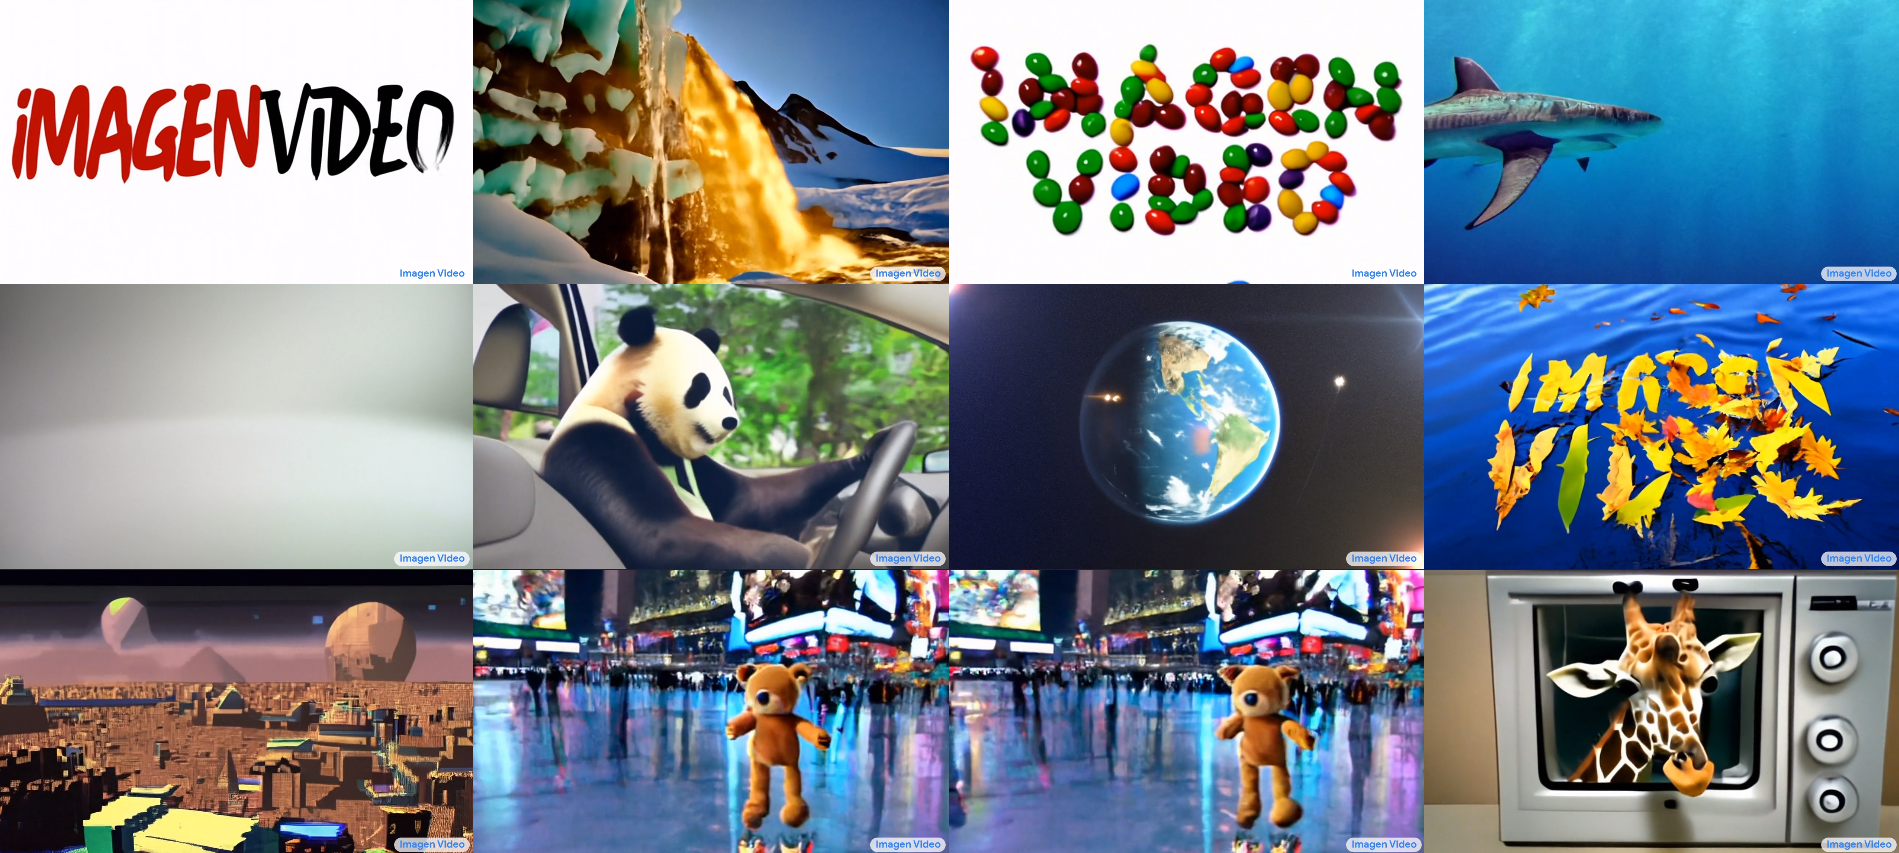 Google ha sviluppato la rete neurale Imagen Video, che crea video sulla base di descrizioni testuali.